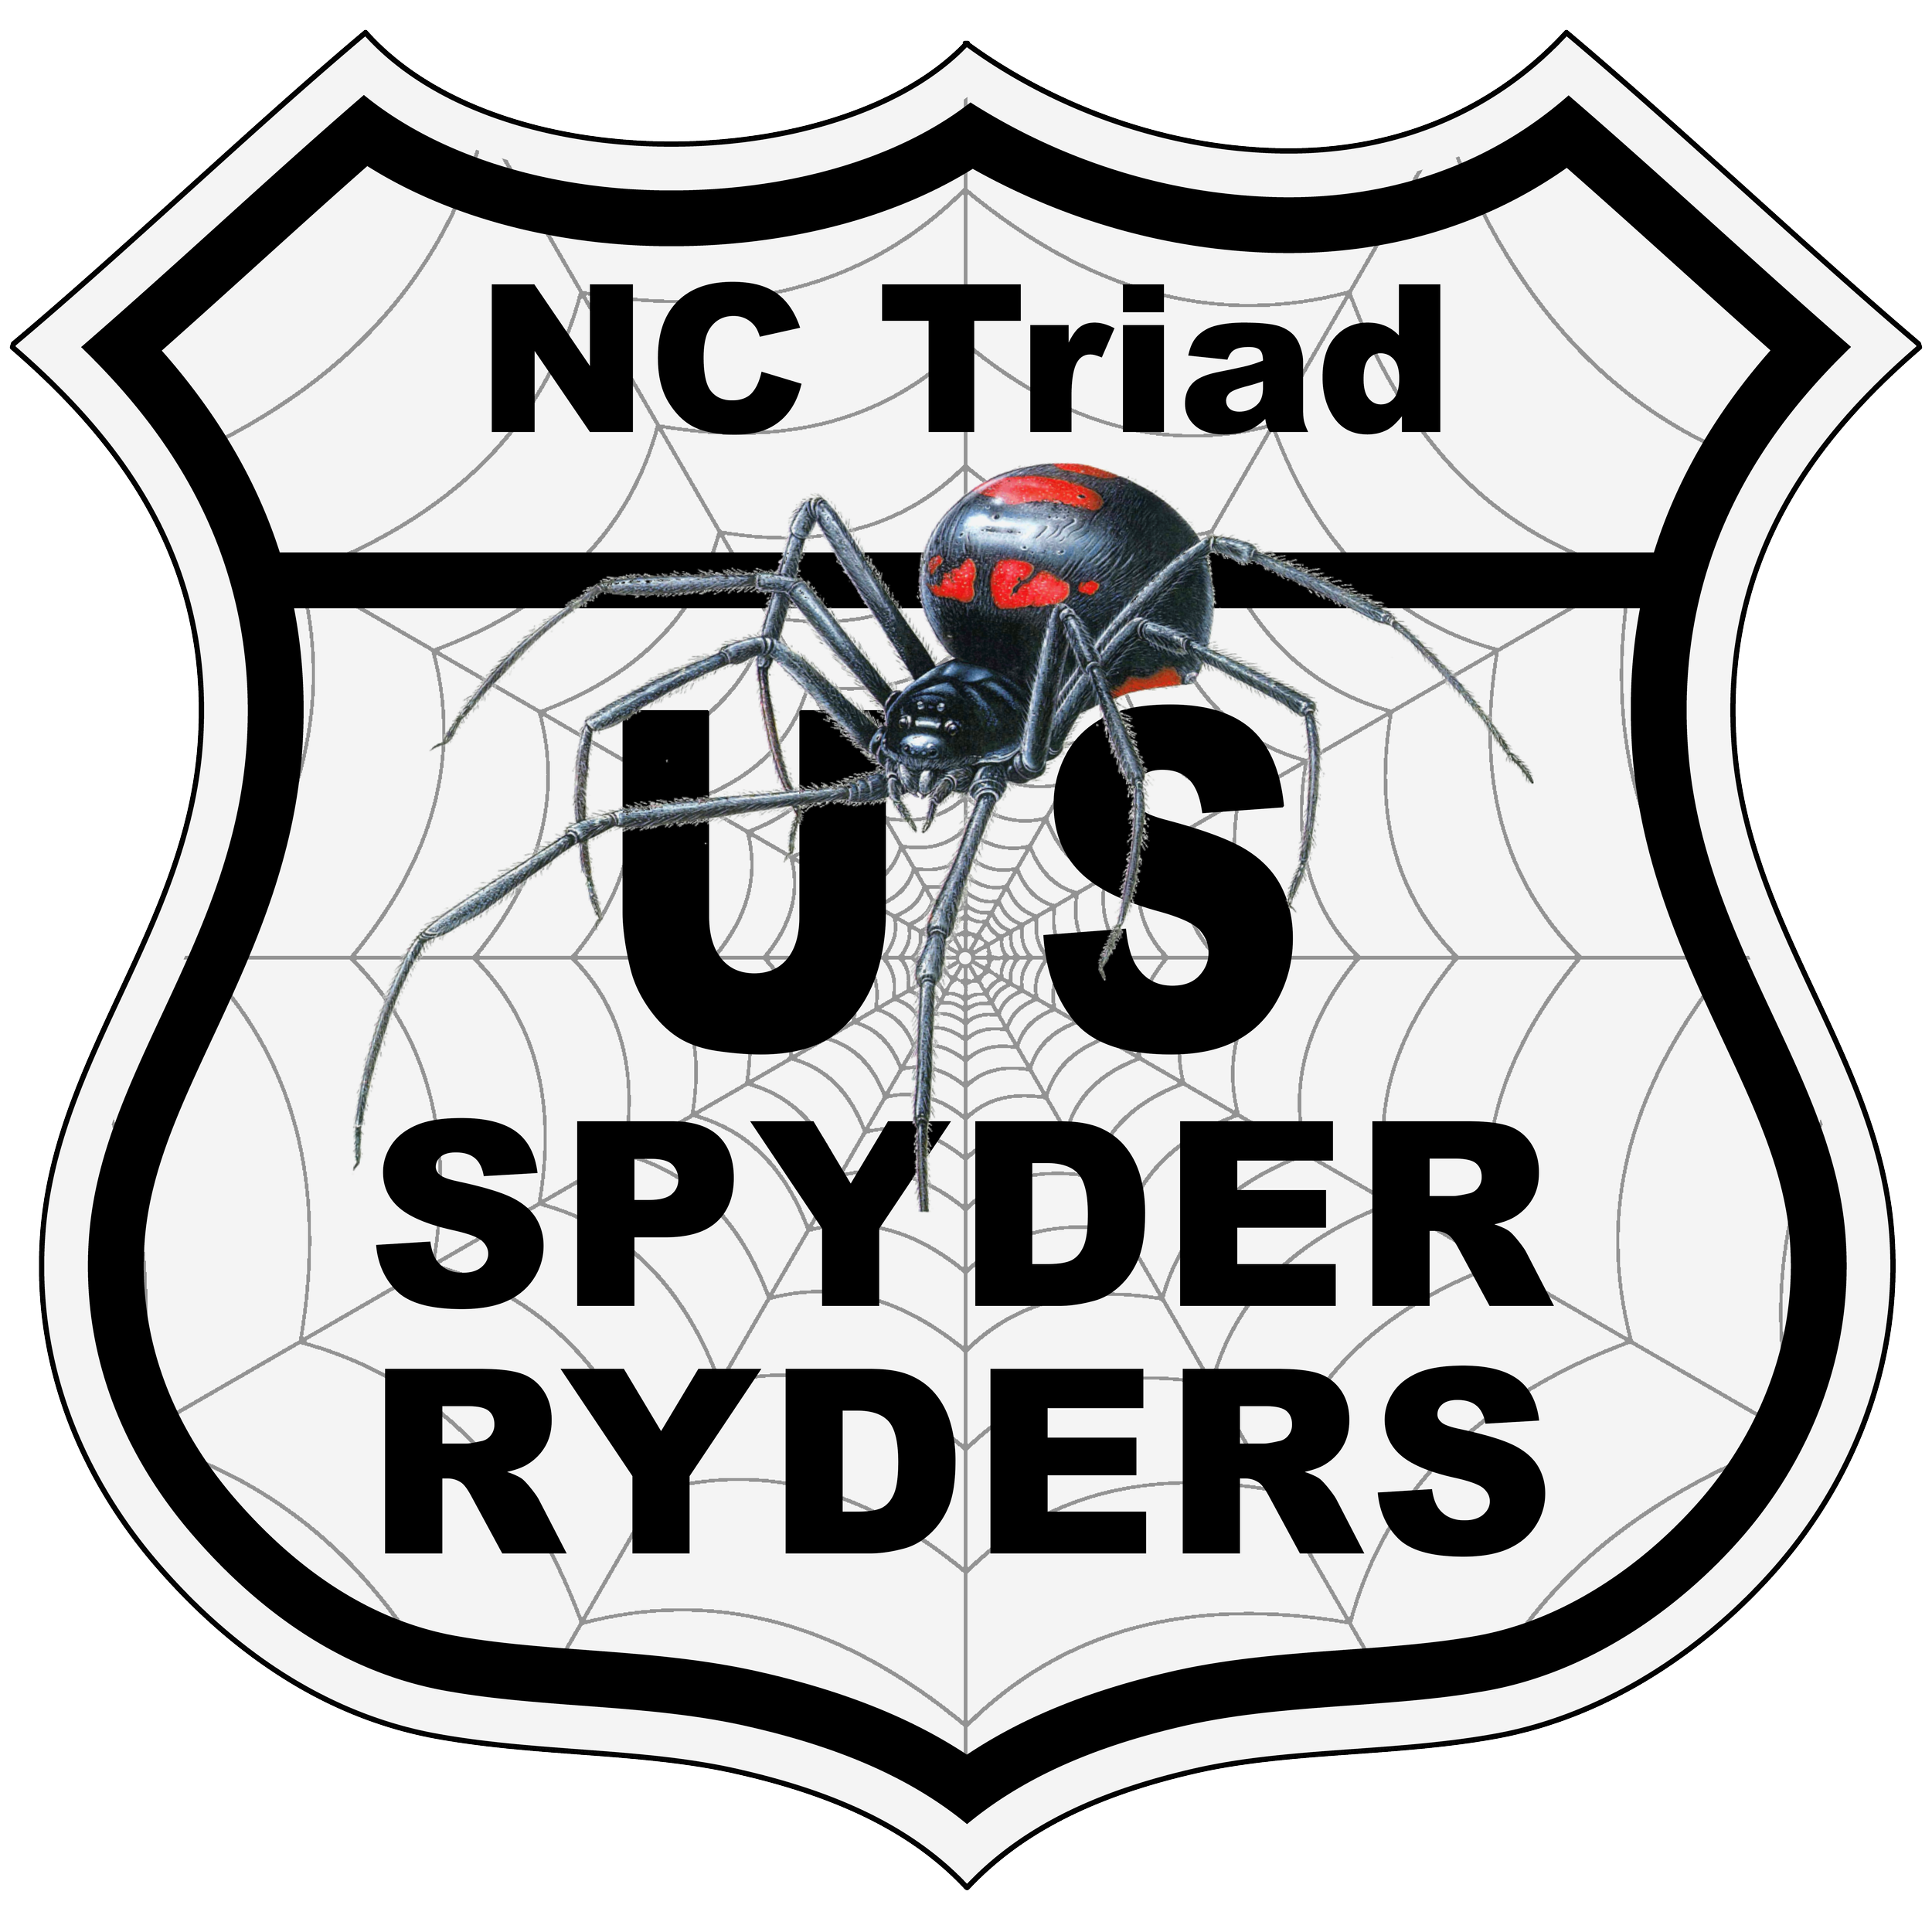 US_Spyder_Ryder_NC Triad.png